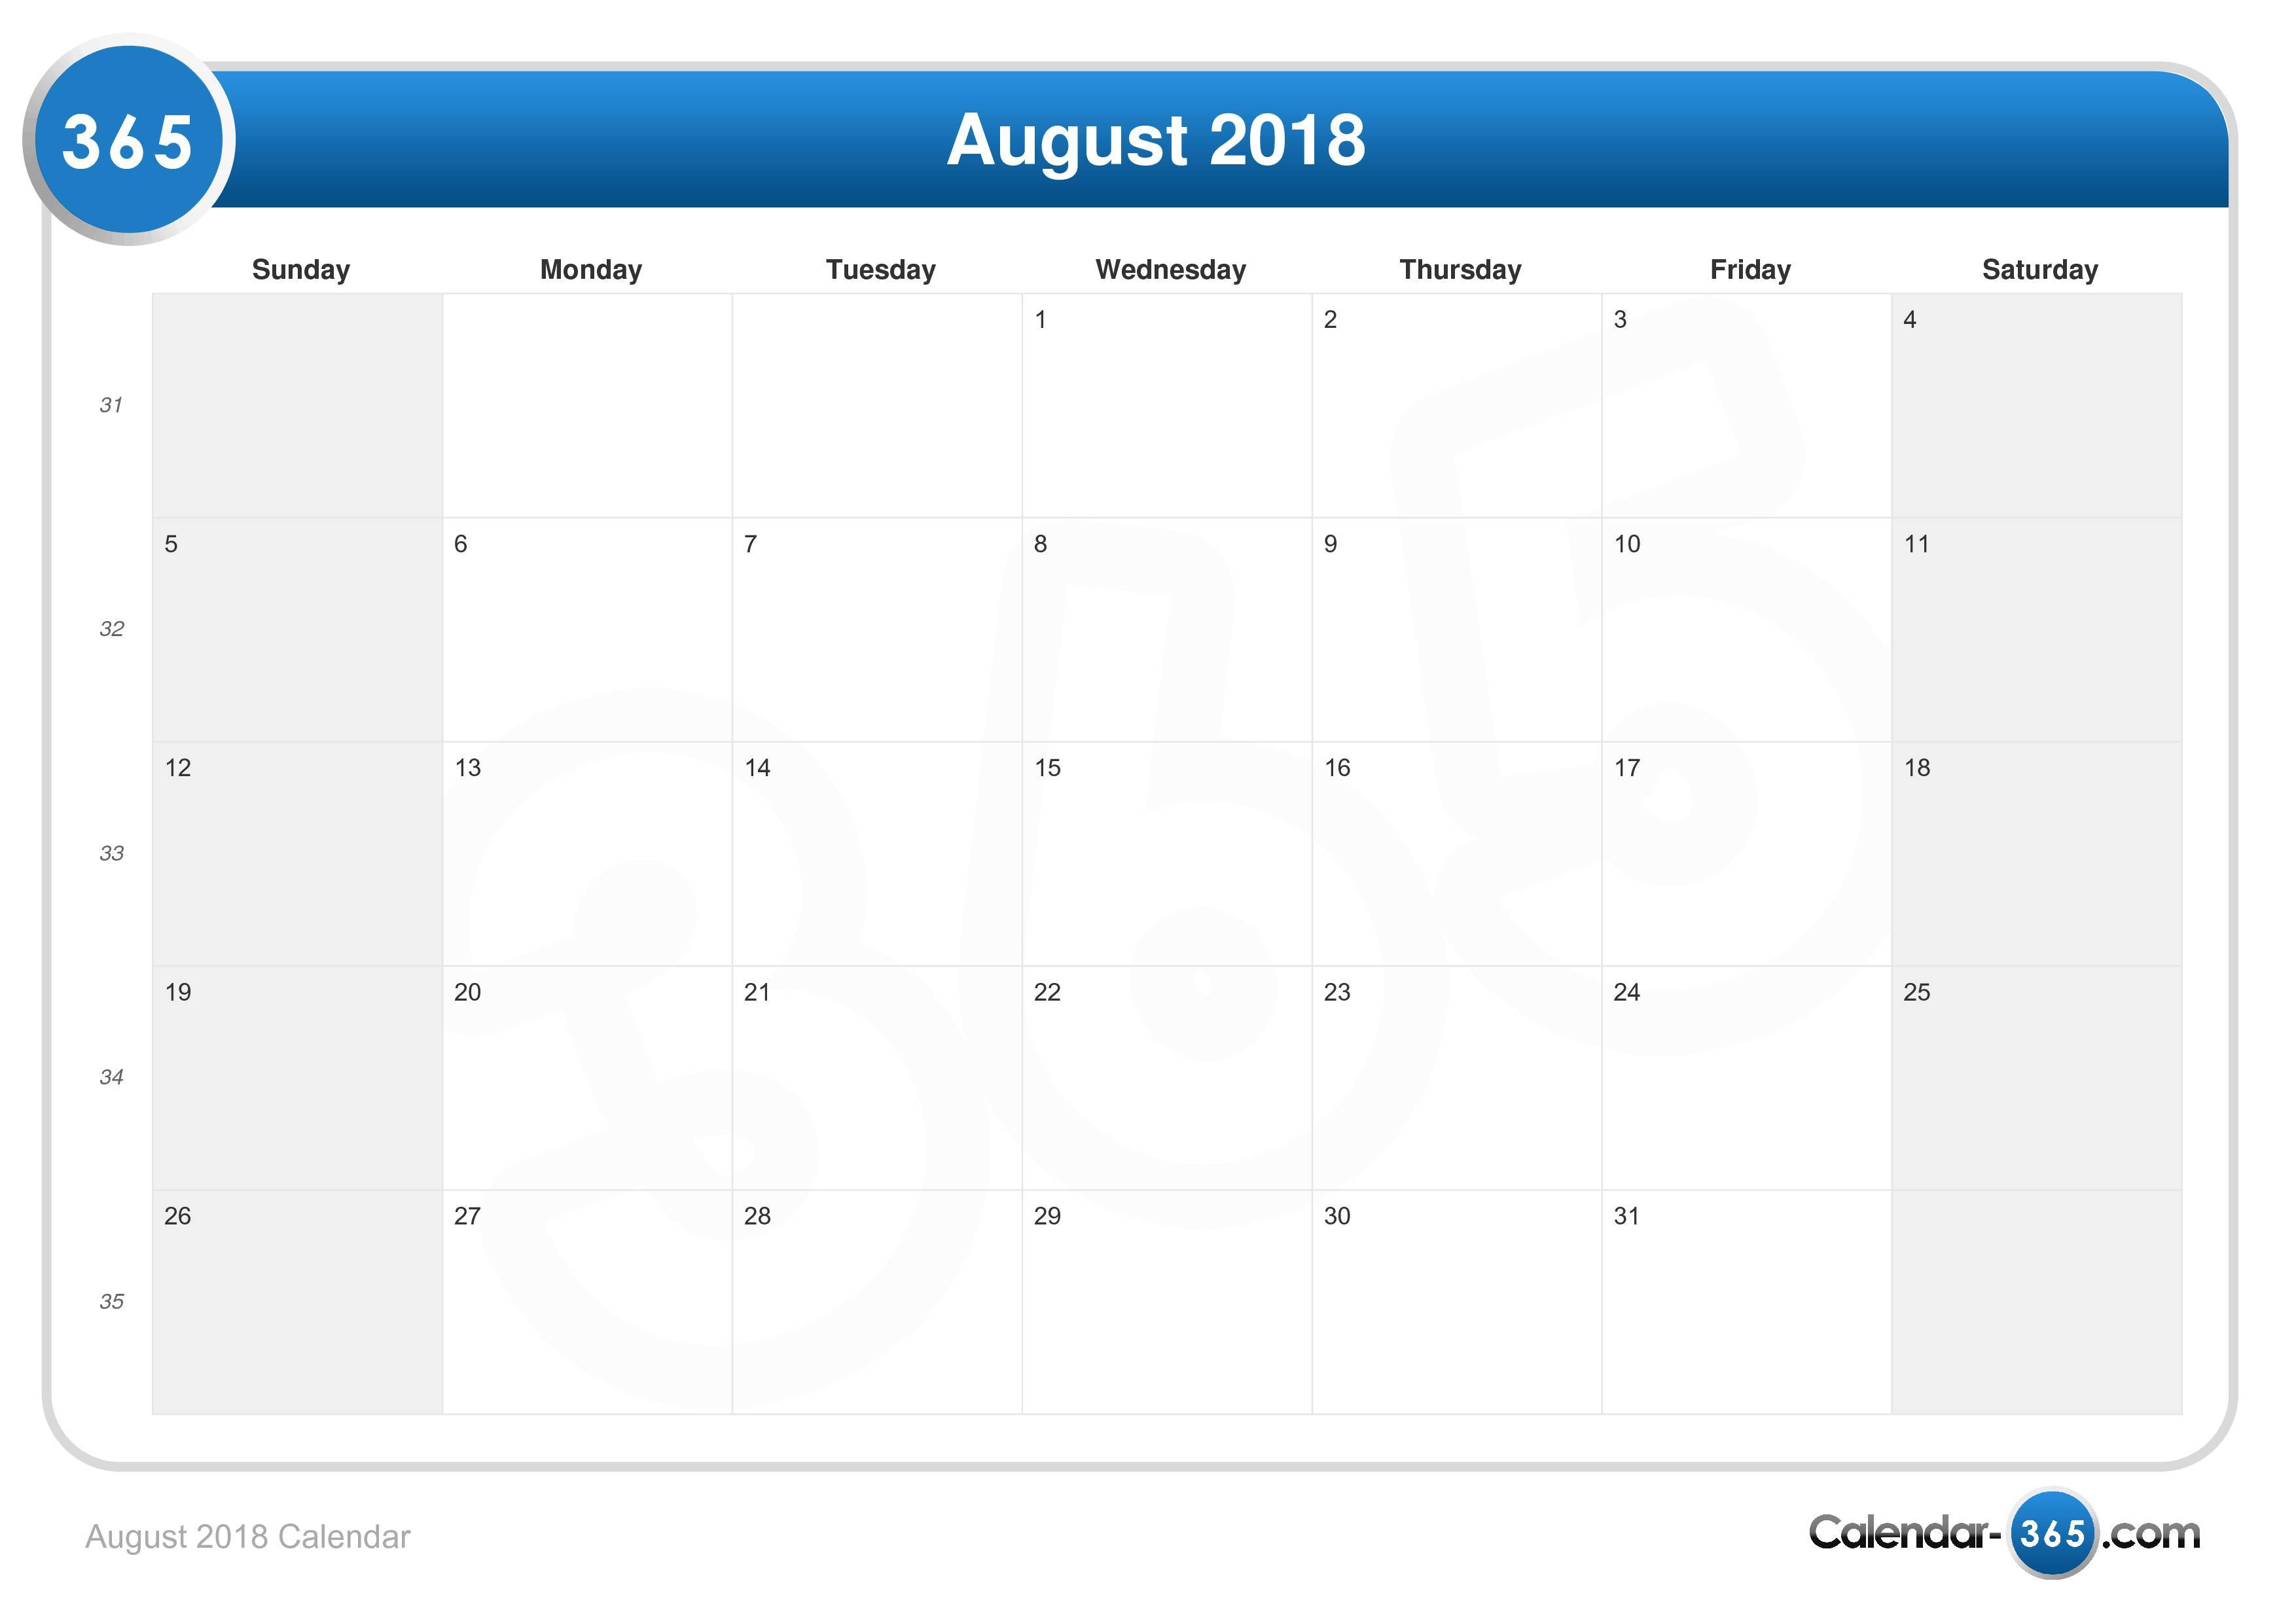 August 18 Calendar